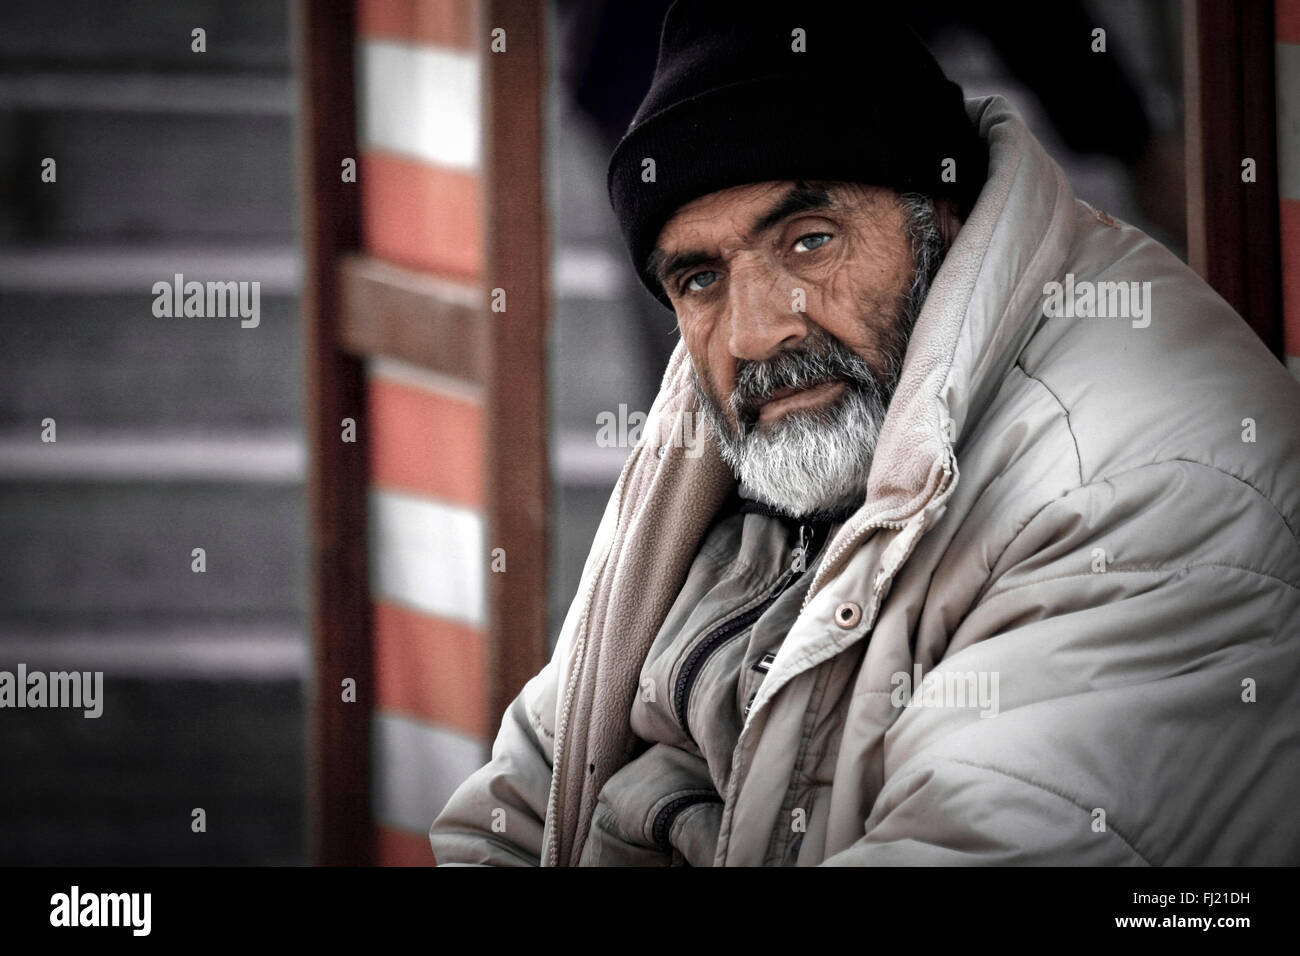 Turkish man with beard in Istanbul Stock Photo